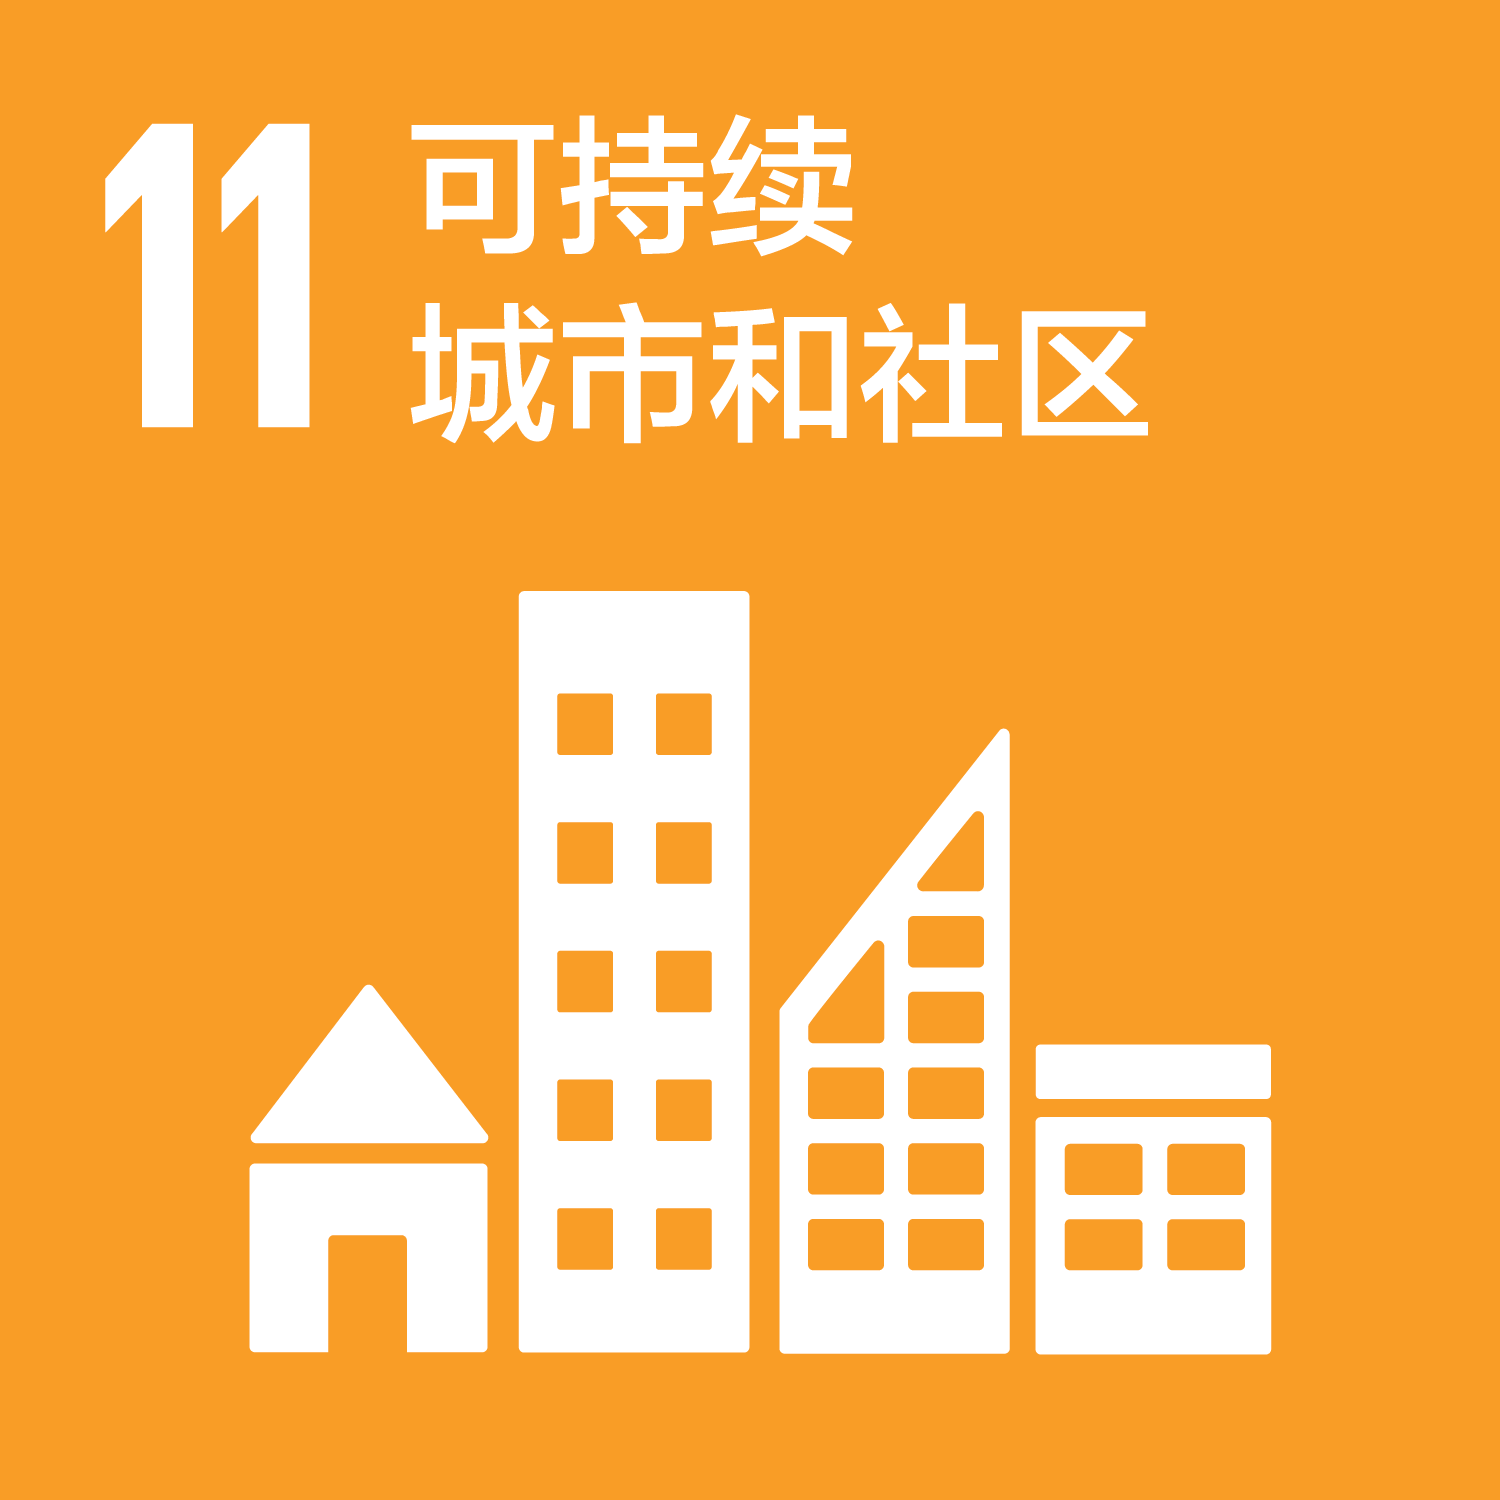 可持续发展目标-11可持续城市和社区